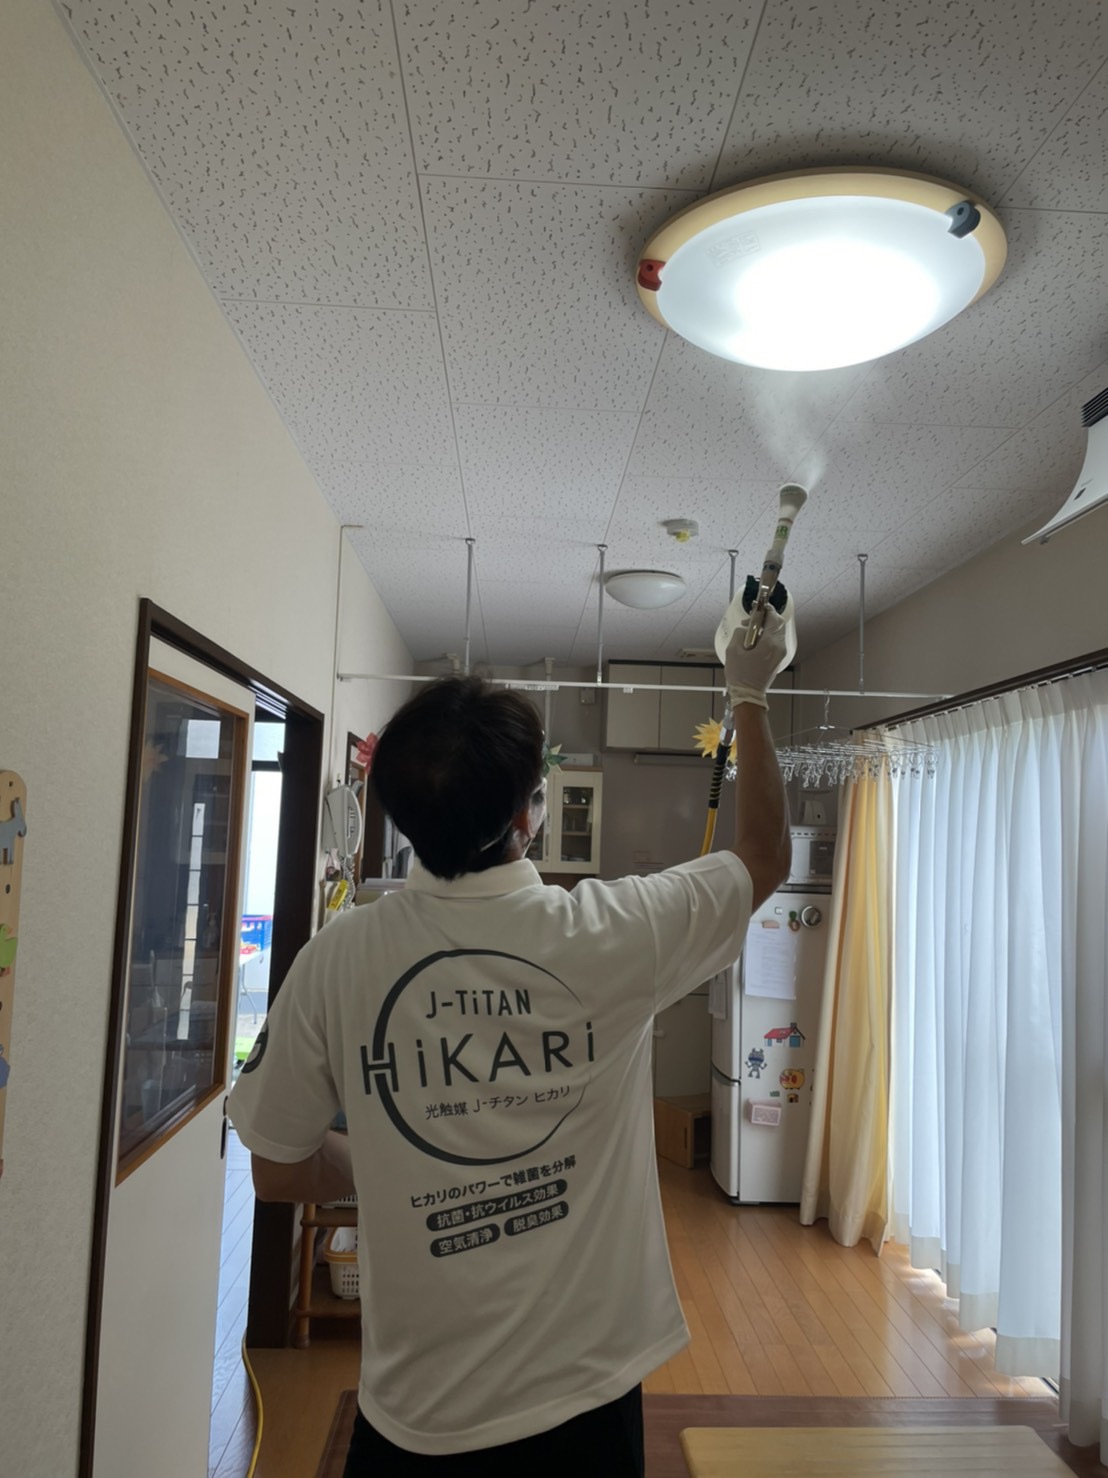 大阪市港区の福祉施設で抗菌・抗ウイルスコーティング[J-チタンHiKARi]を施工